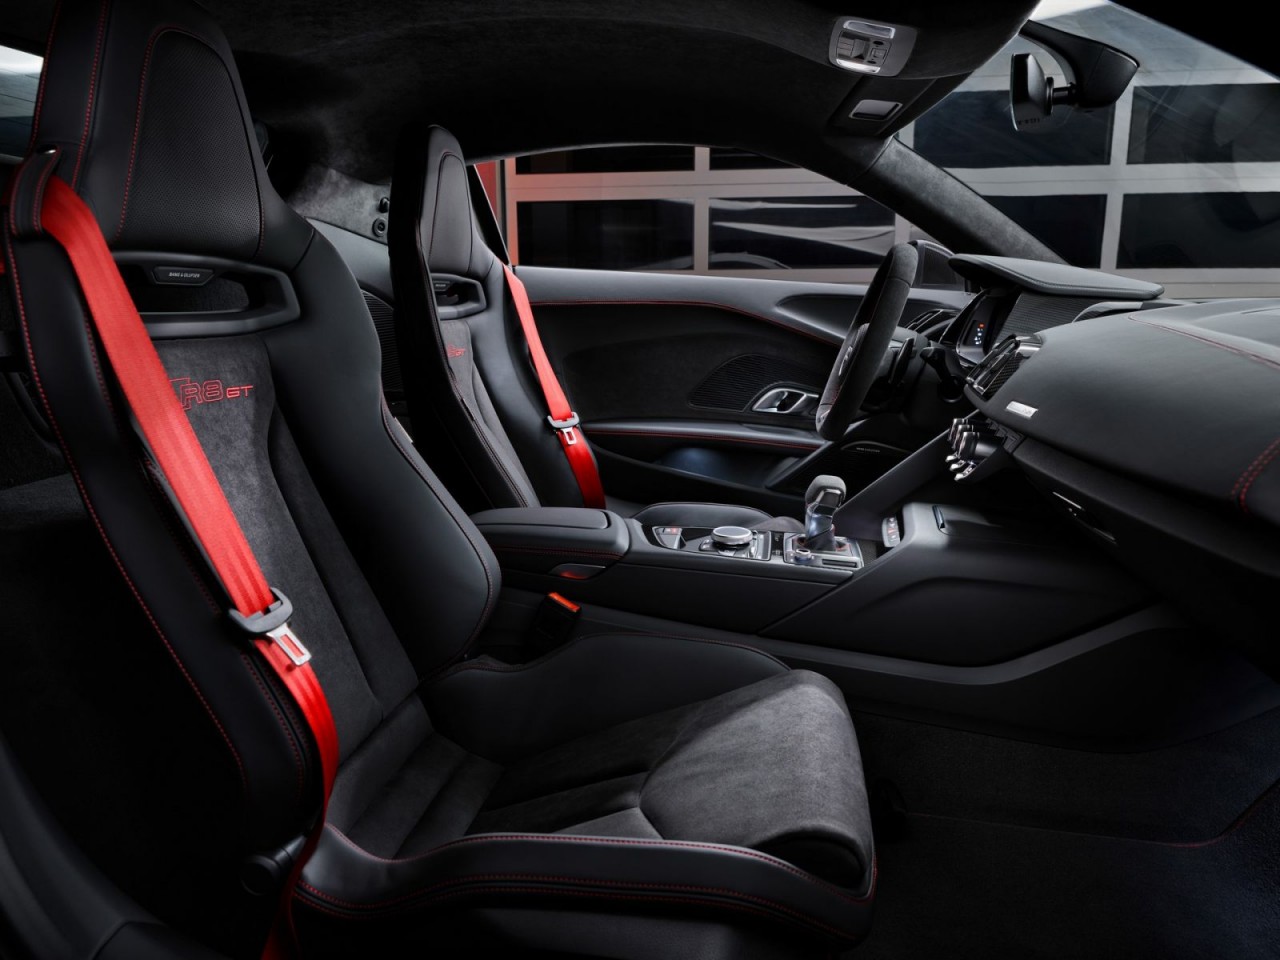 Audi giới thiệu R8 GT phiên bản giới hạn với số lượng 333 xe